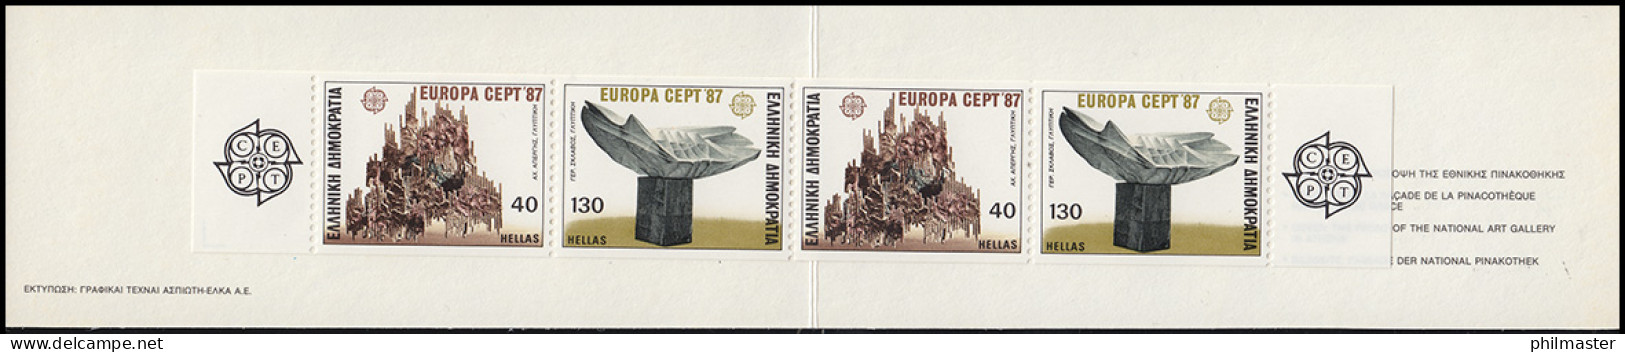 Griechenland Markenheftchen 6 Europa 1987, ** Postfrisch - Booklets